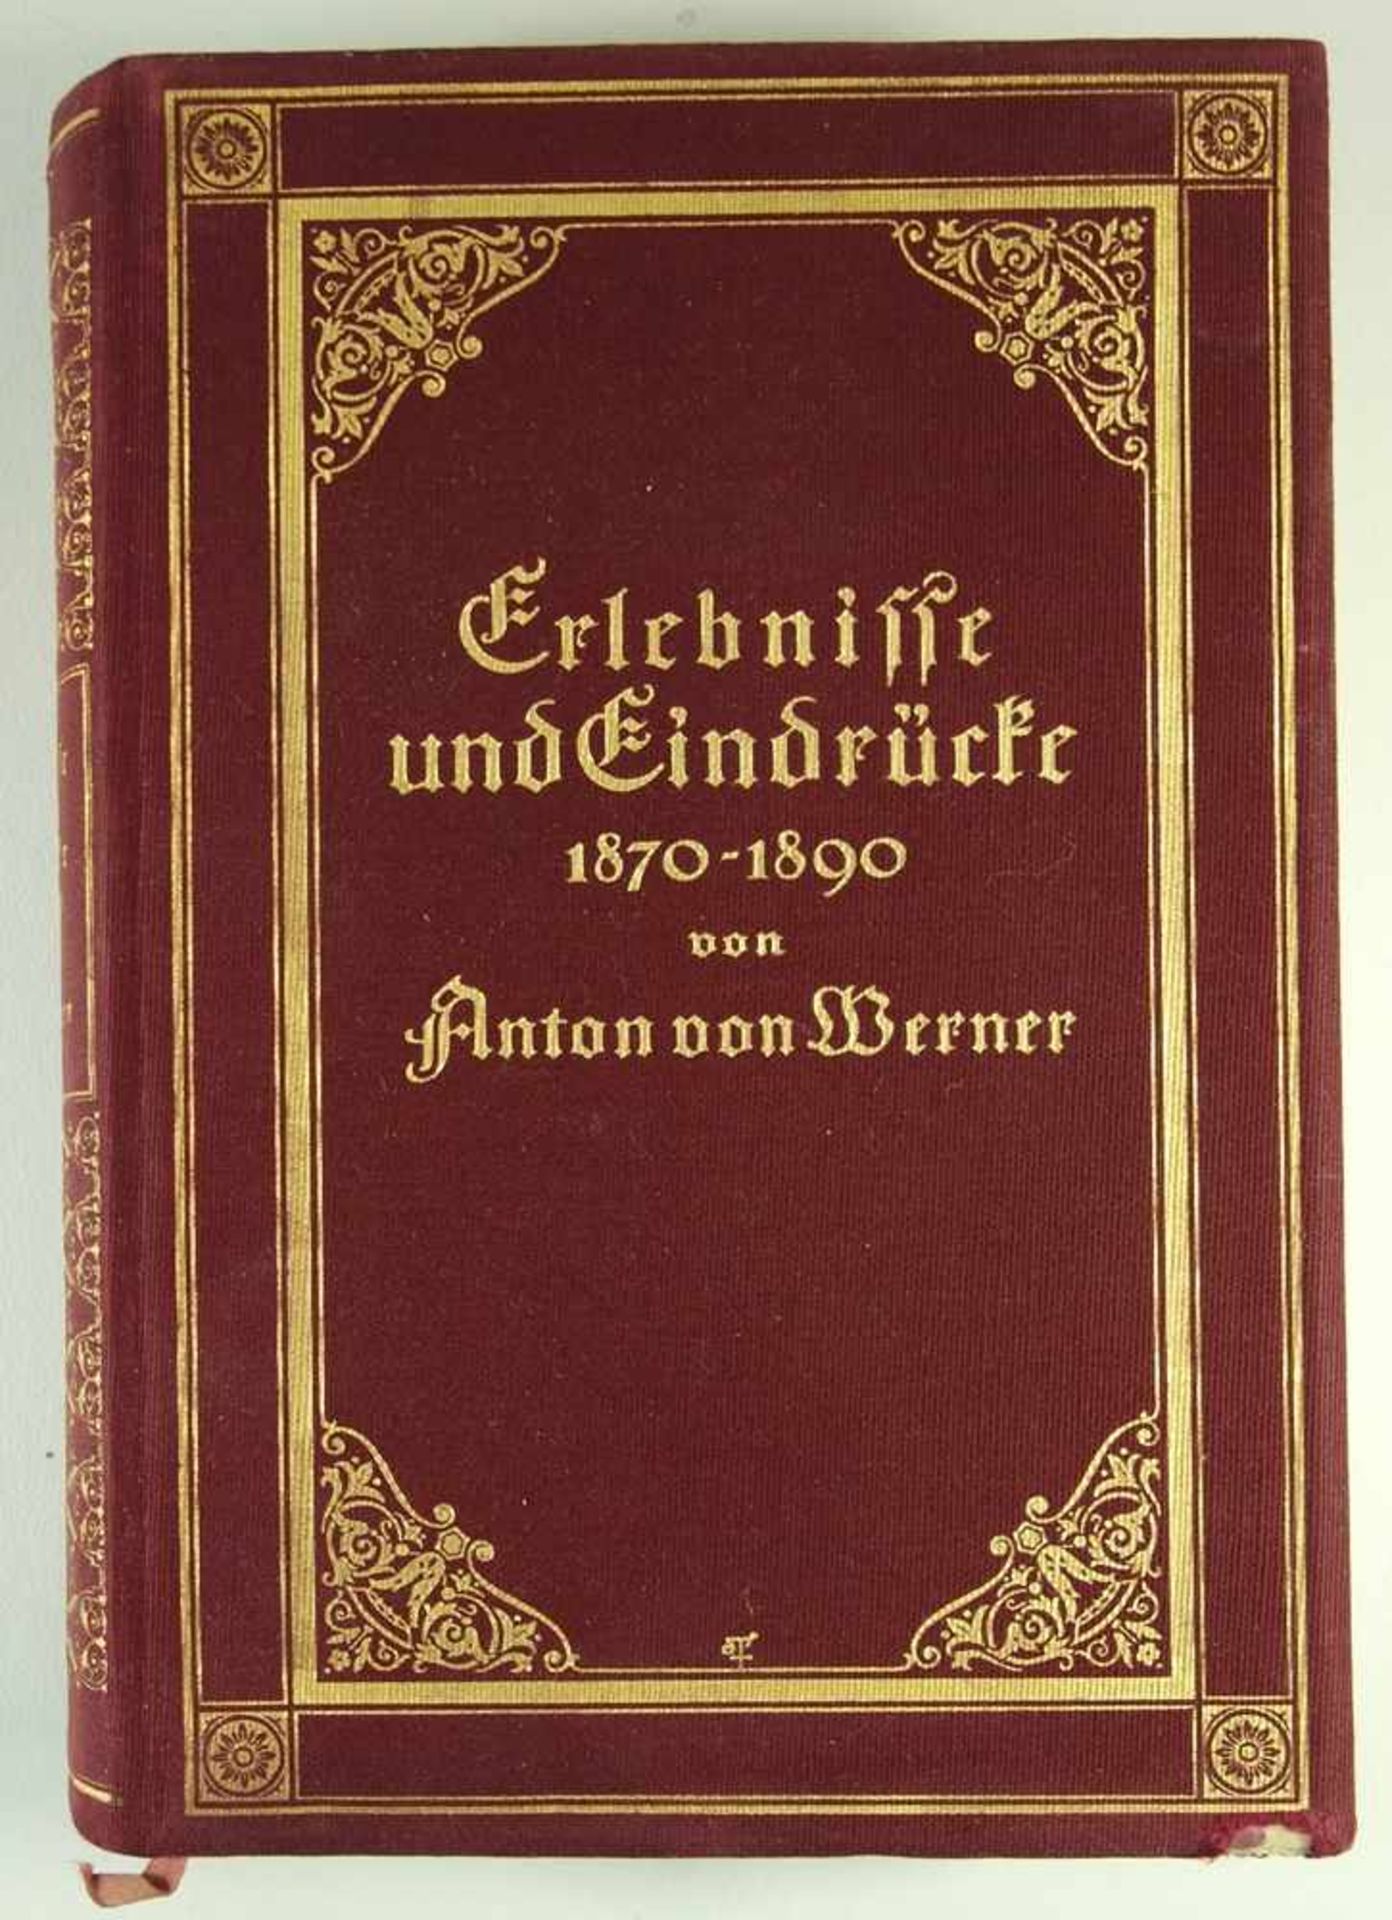 Anton von Werner, Erlebnisse und Eindrücke 1870 - 1890, Berlin 1913, verlegt bei Ernst Siegfried